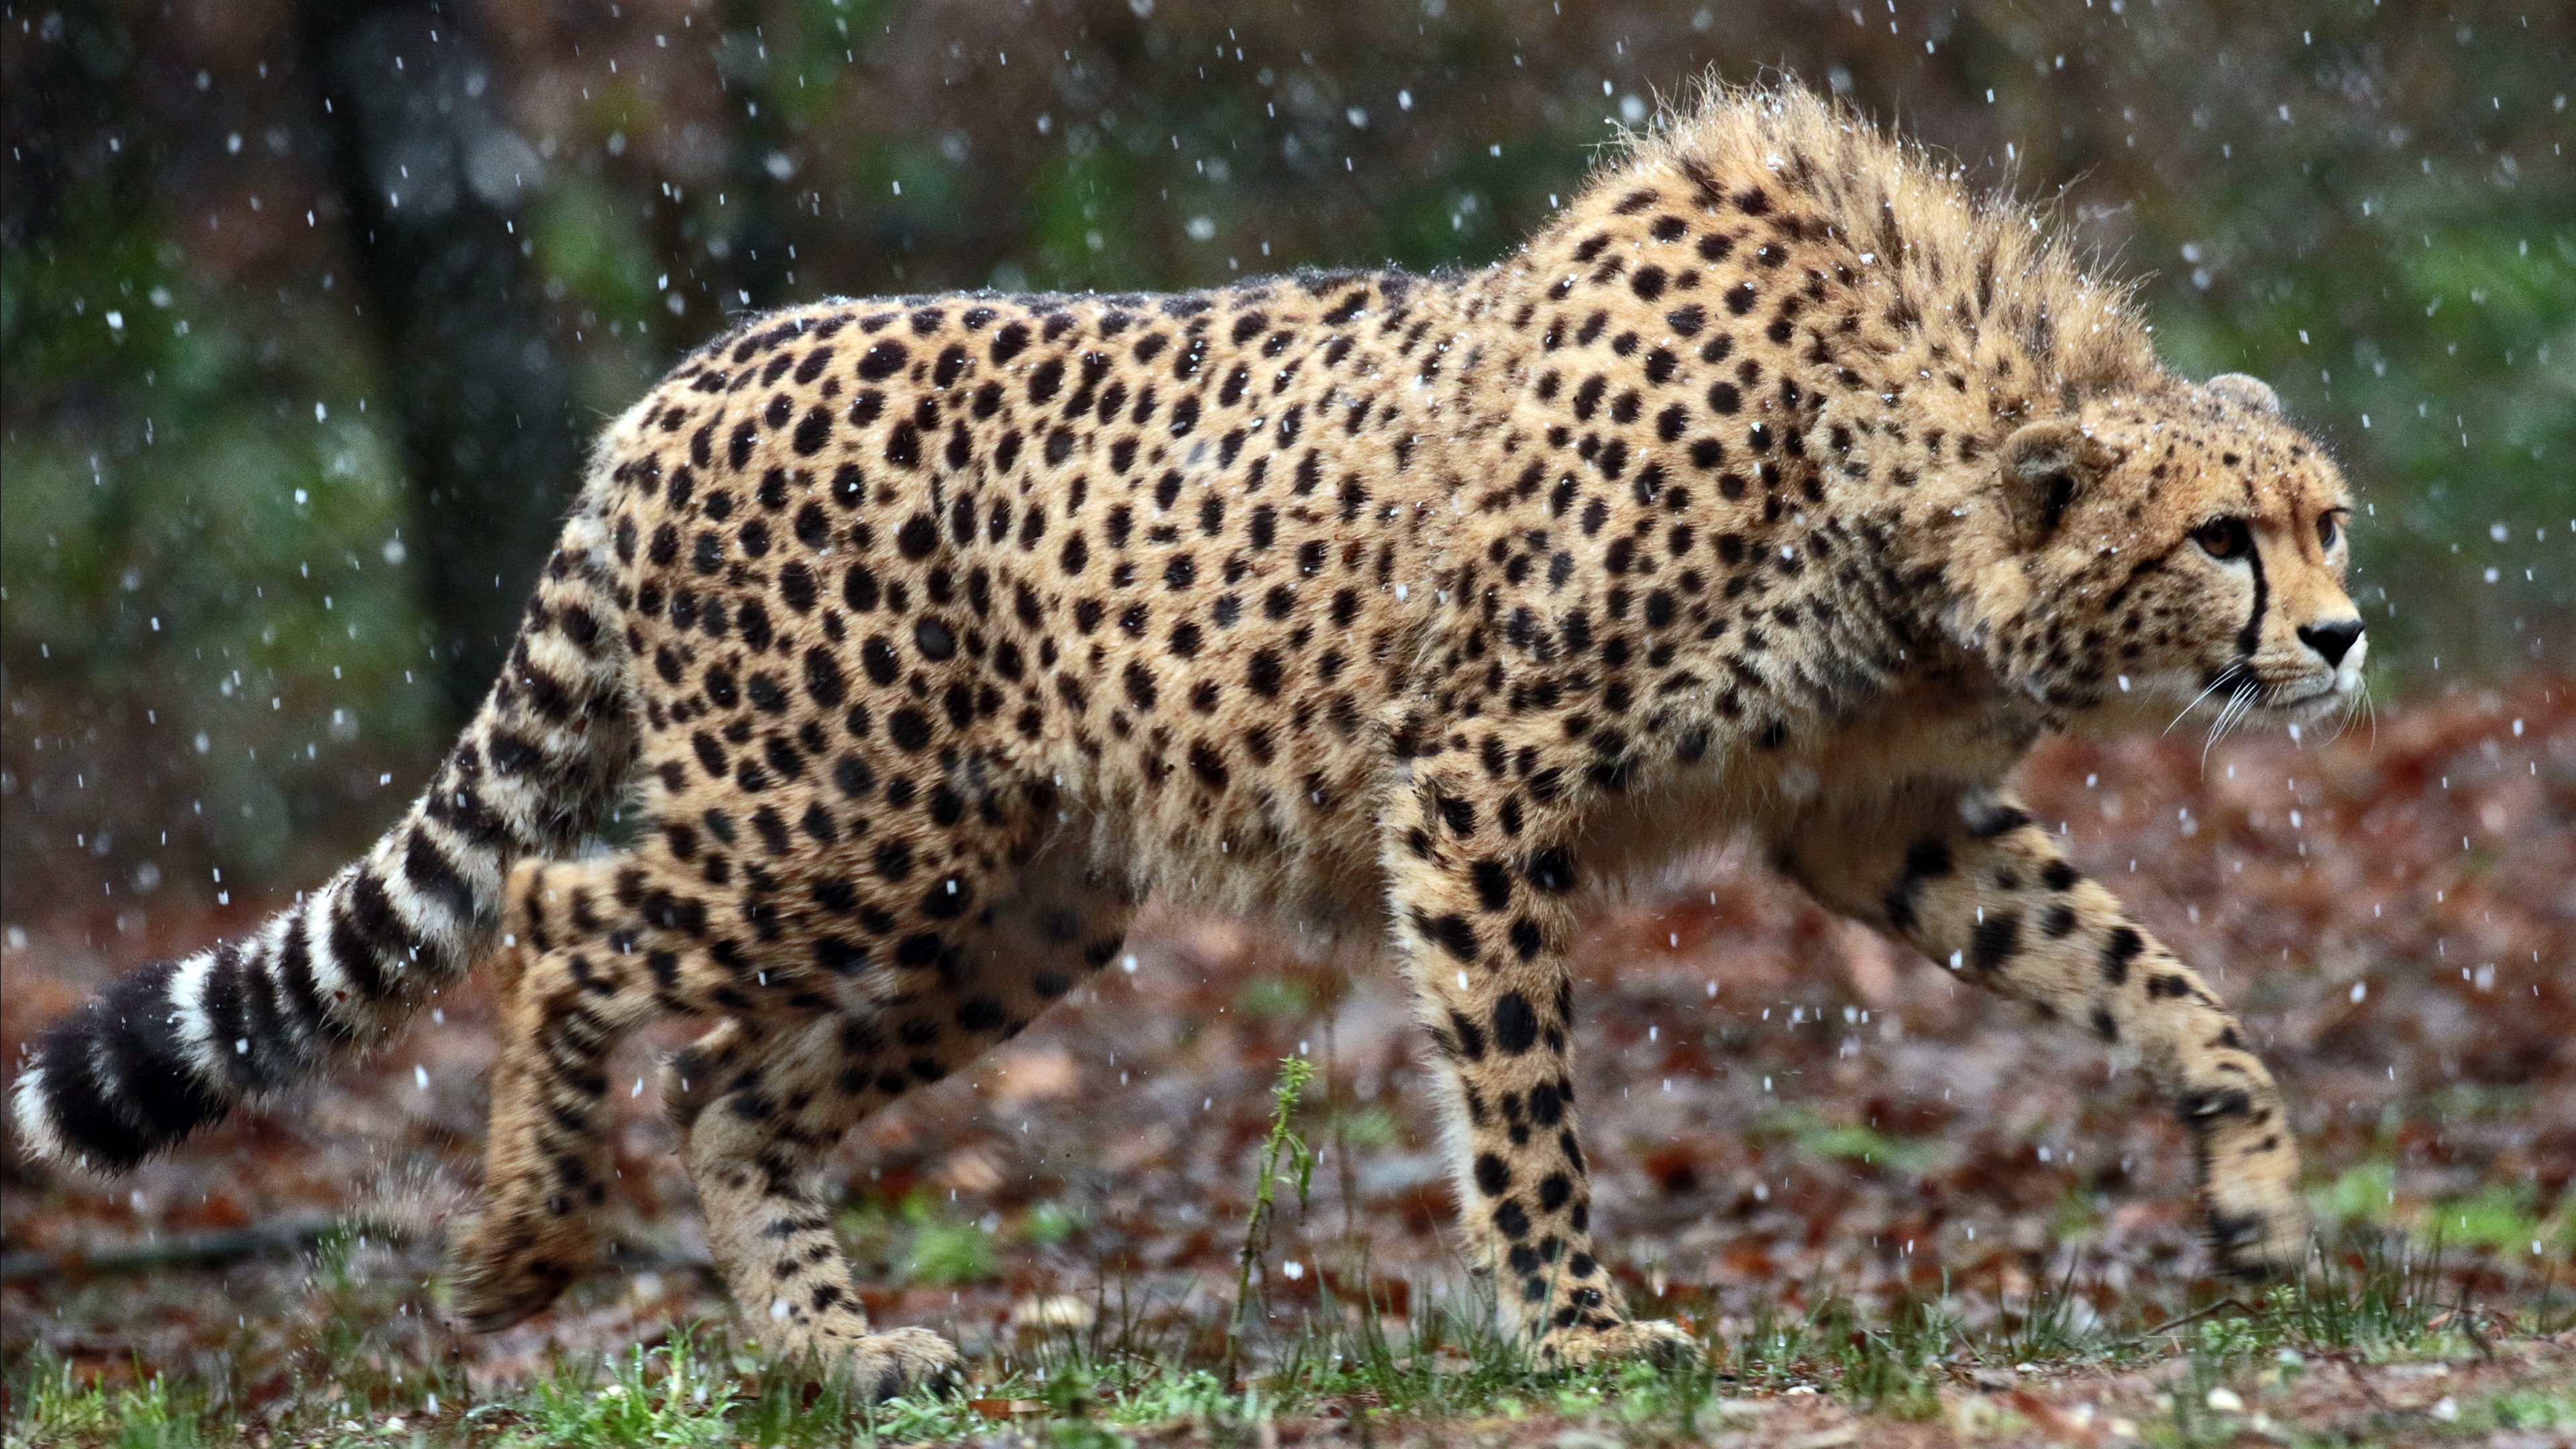 Wild cheetah, Fastest land animal, Free download, Jooinn wildlife, 3840x2160 4K Desktop